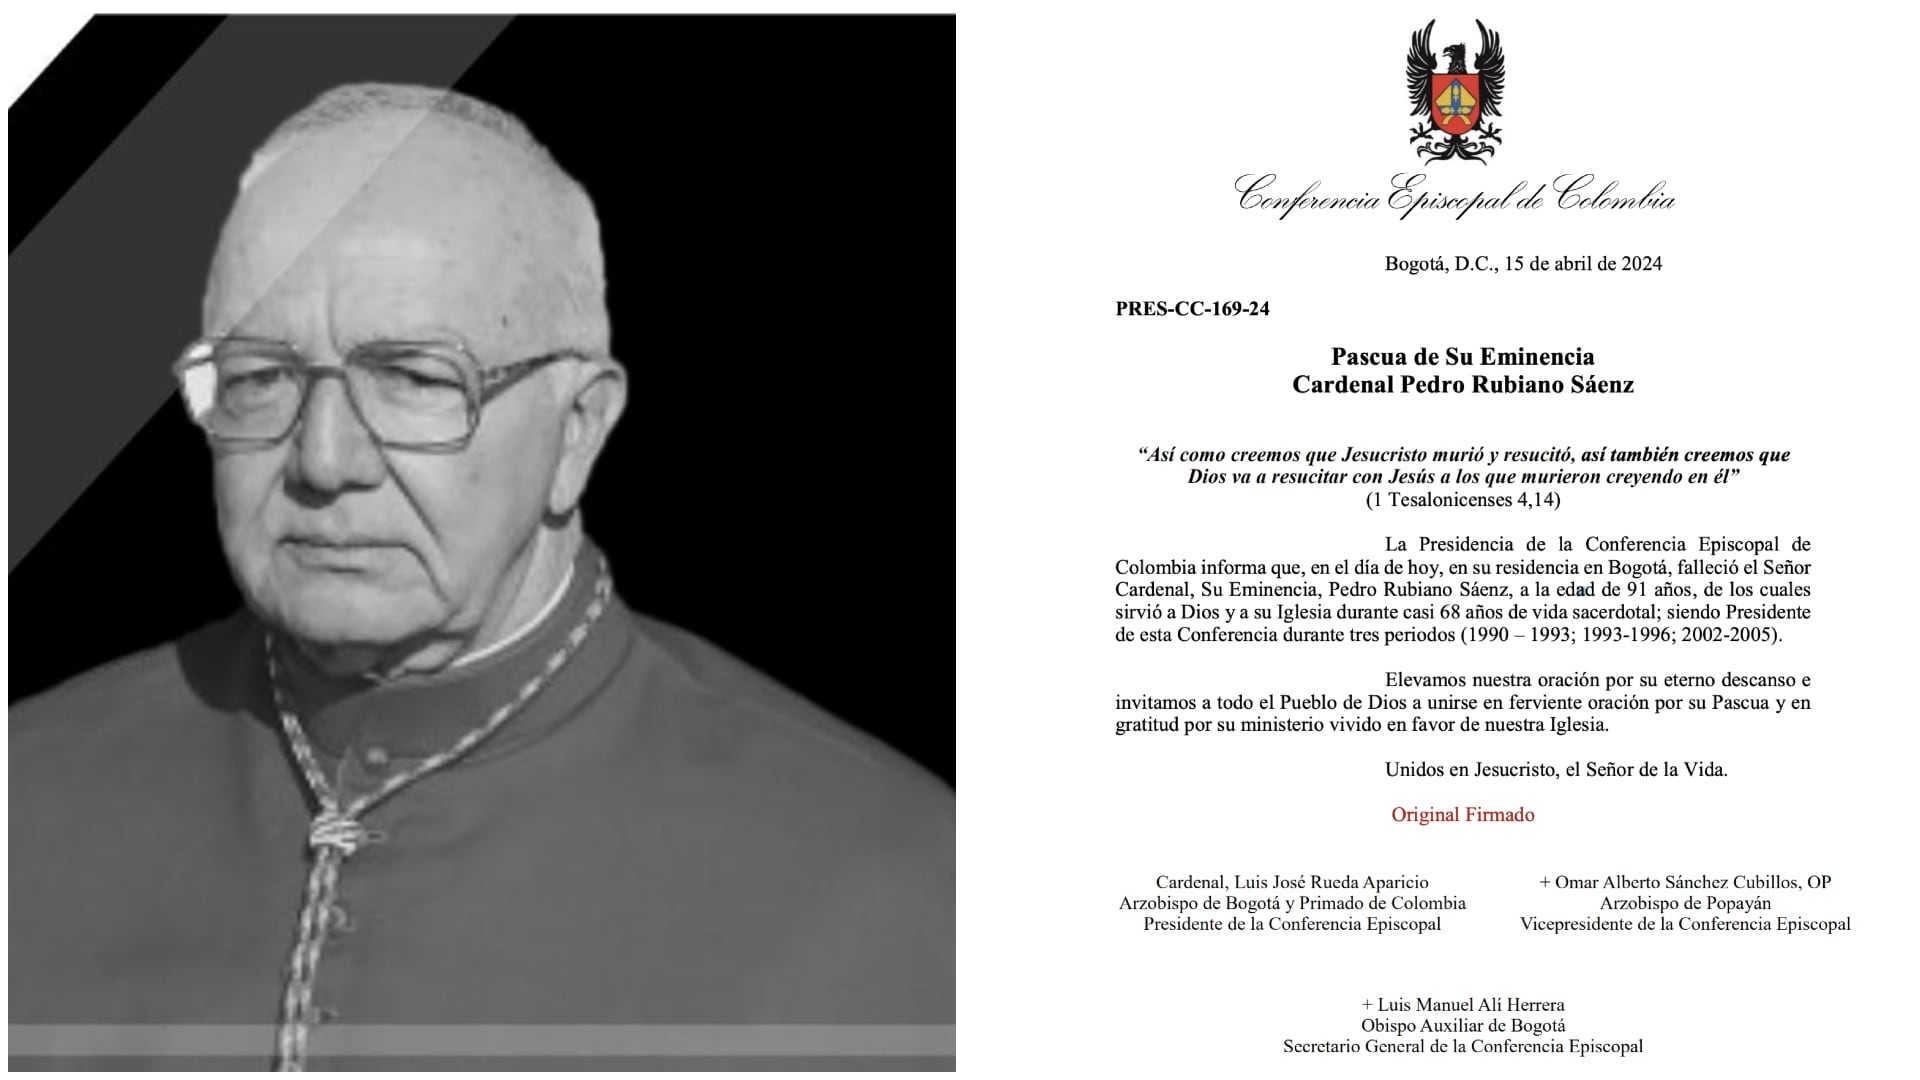 Falleció a sus 91 años el el Cardenal Pedro Rubiano Sáenz, expresidente de la Conferencia Episcopal de Colombia ( Conferencia Episcopal de Colombia)